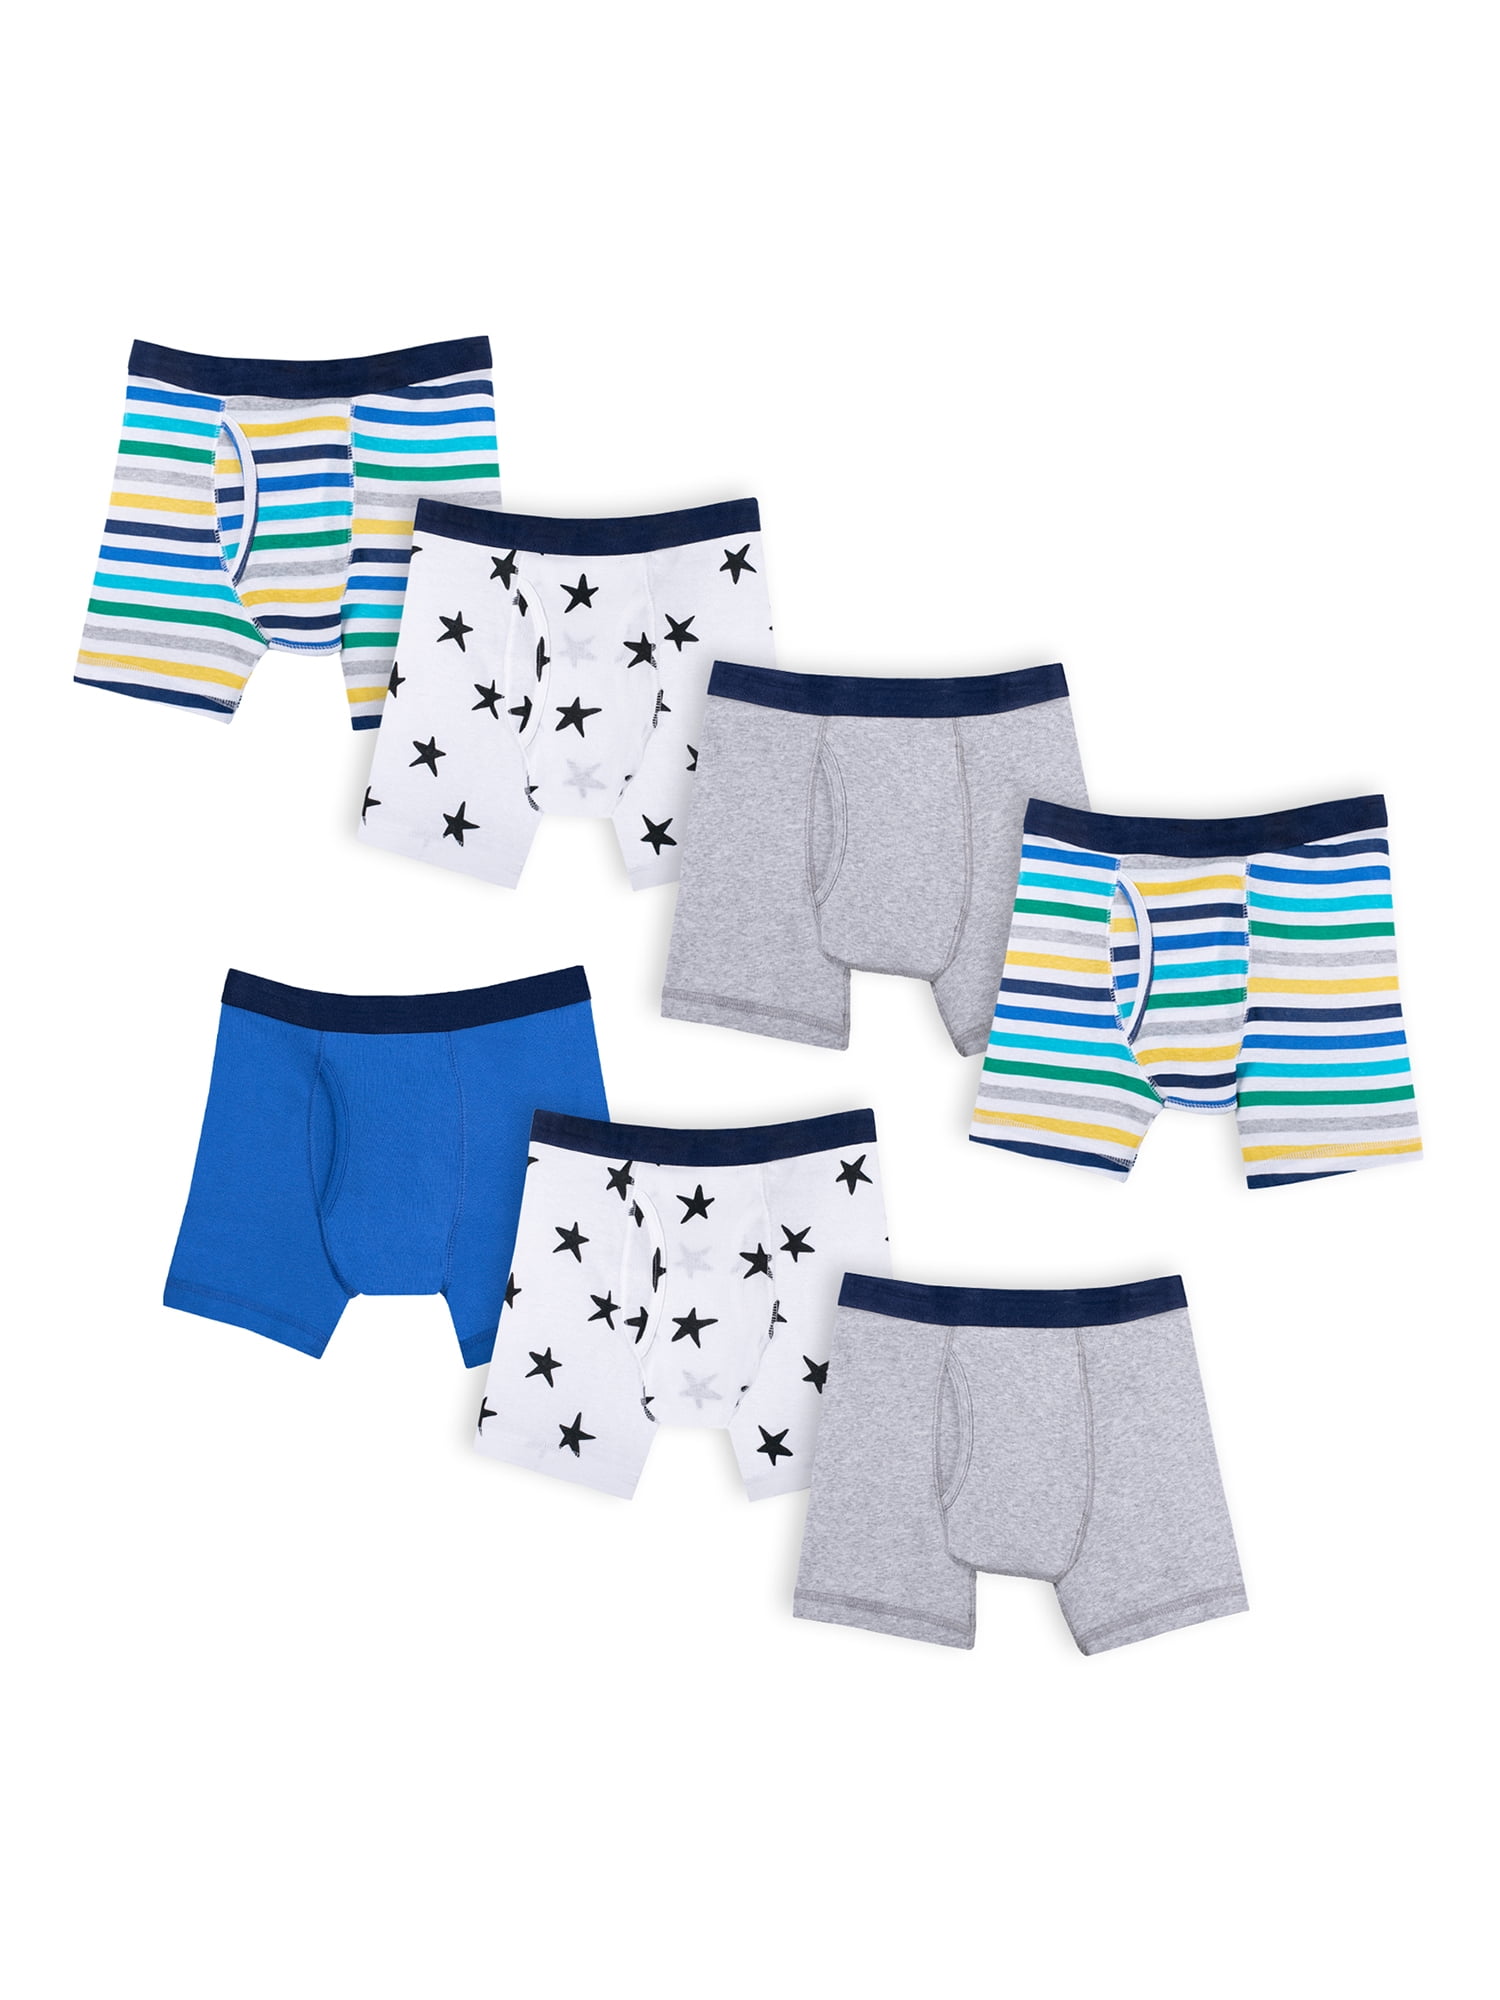 Details about   6Pack kids toddler Little Boys' Soft Combed Cotton boxer Briefs Underwear Undies 